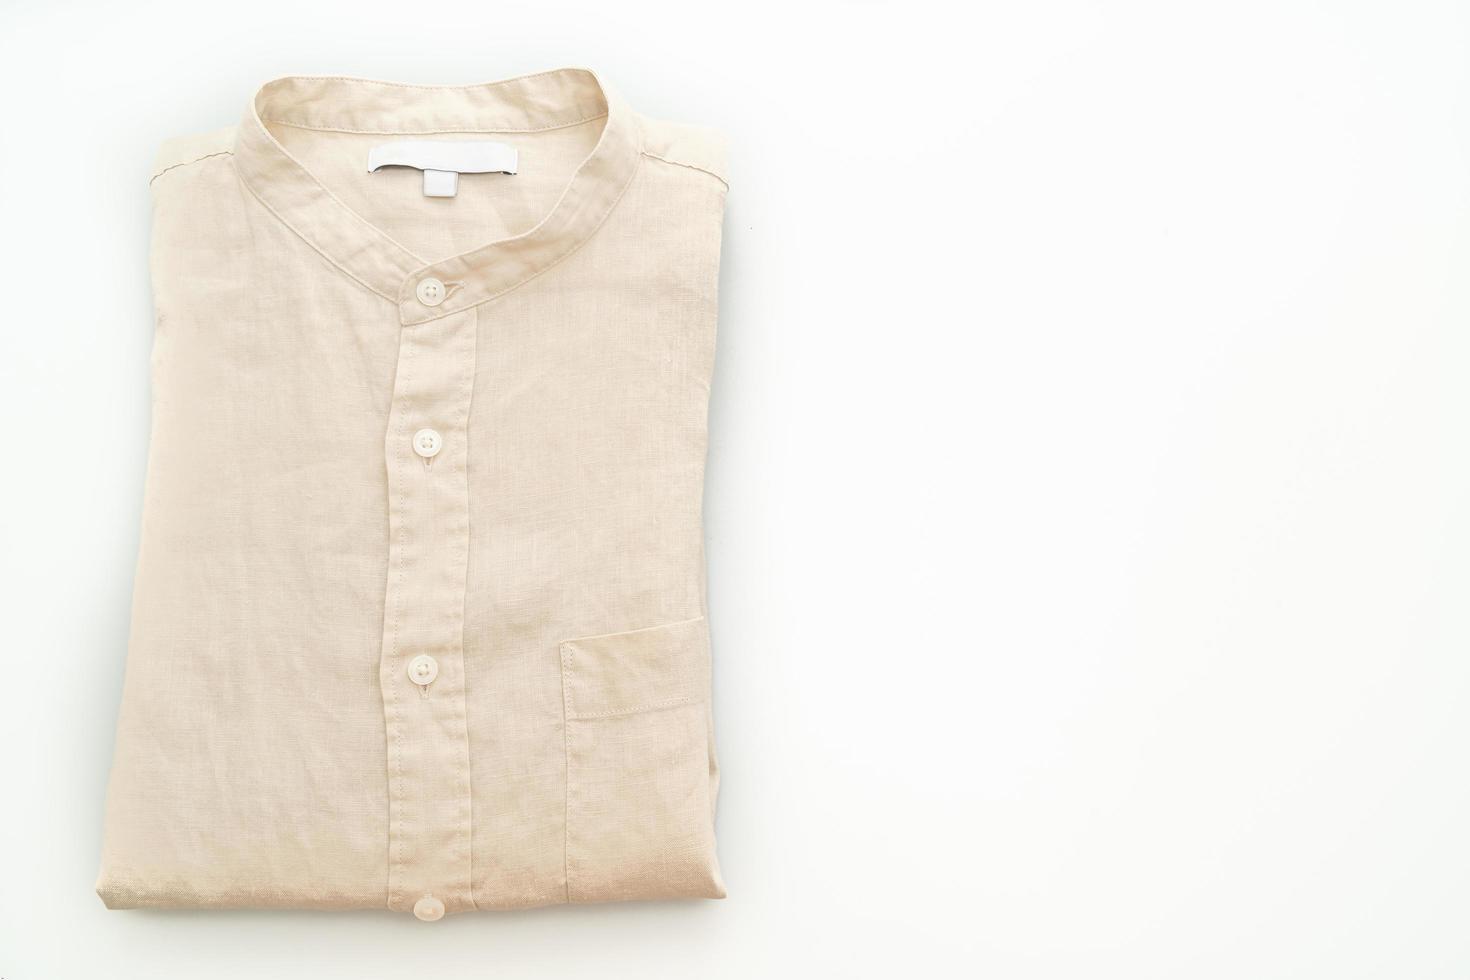 Beige shirt folded isolated on white background photo